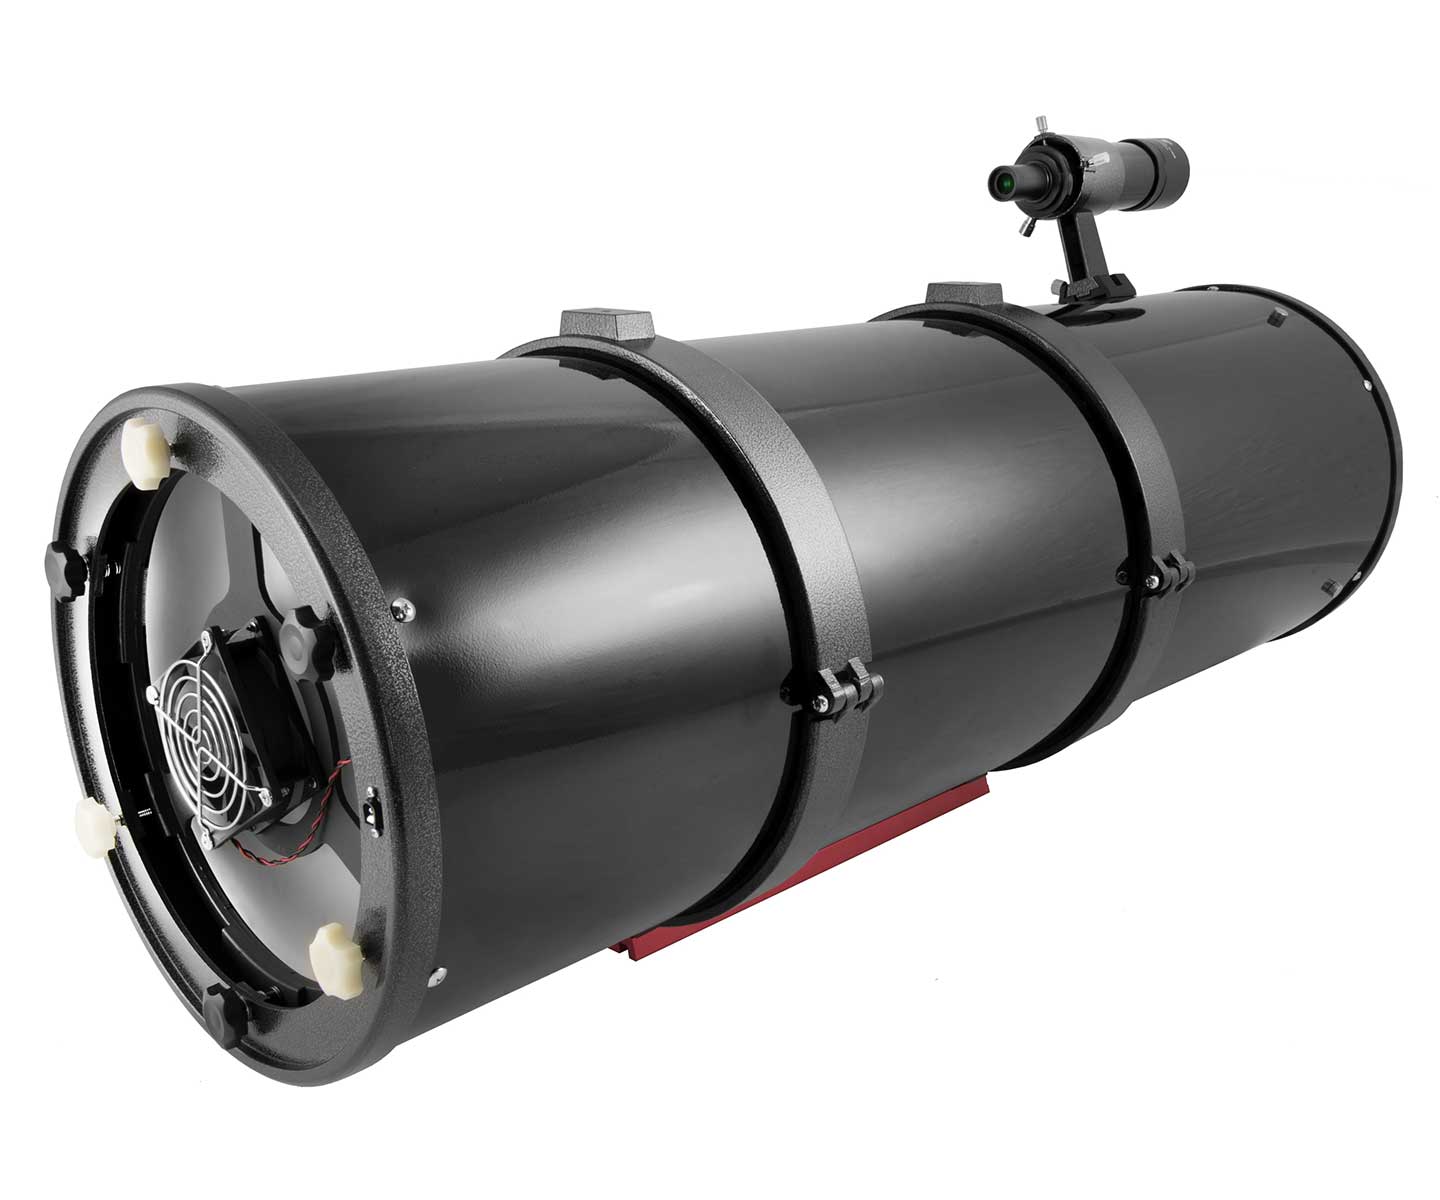   Tubo ottico GSO 305mm F5 Newton Ota con focheggiatore Crayford da 50.8mm   